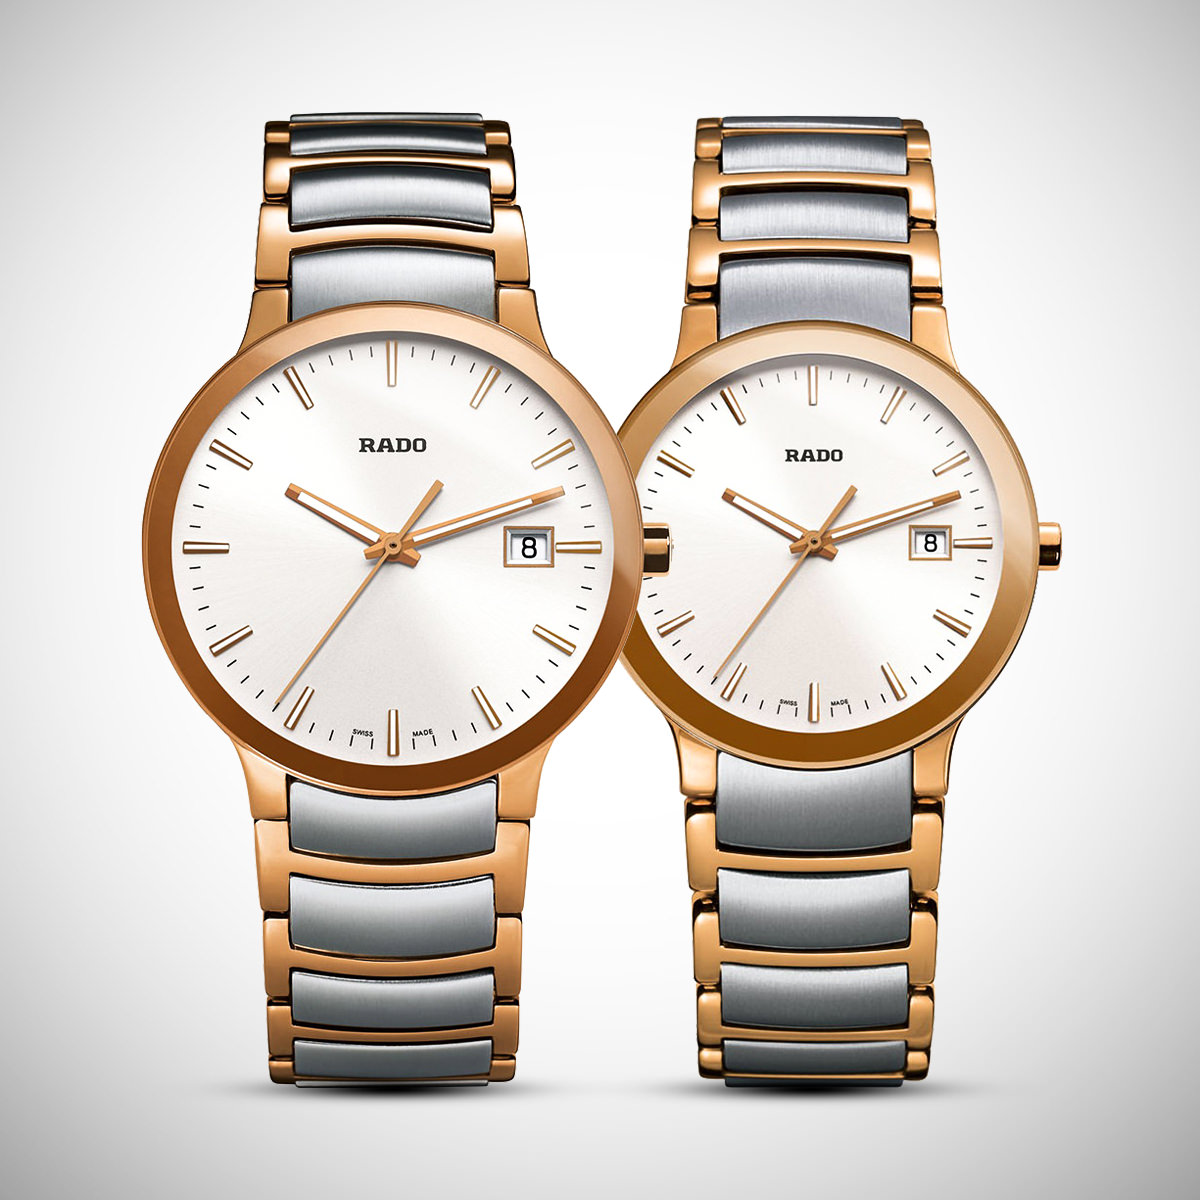 Đồng hồ cặp đôi Centrix đến từ Rado